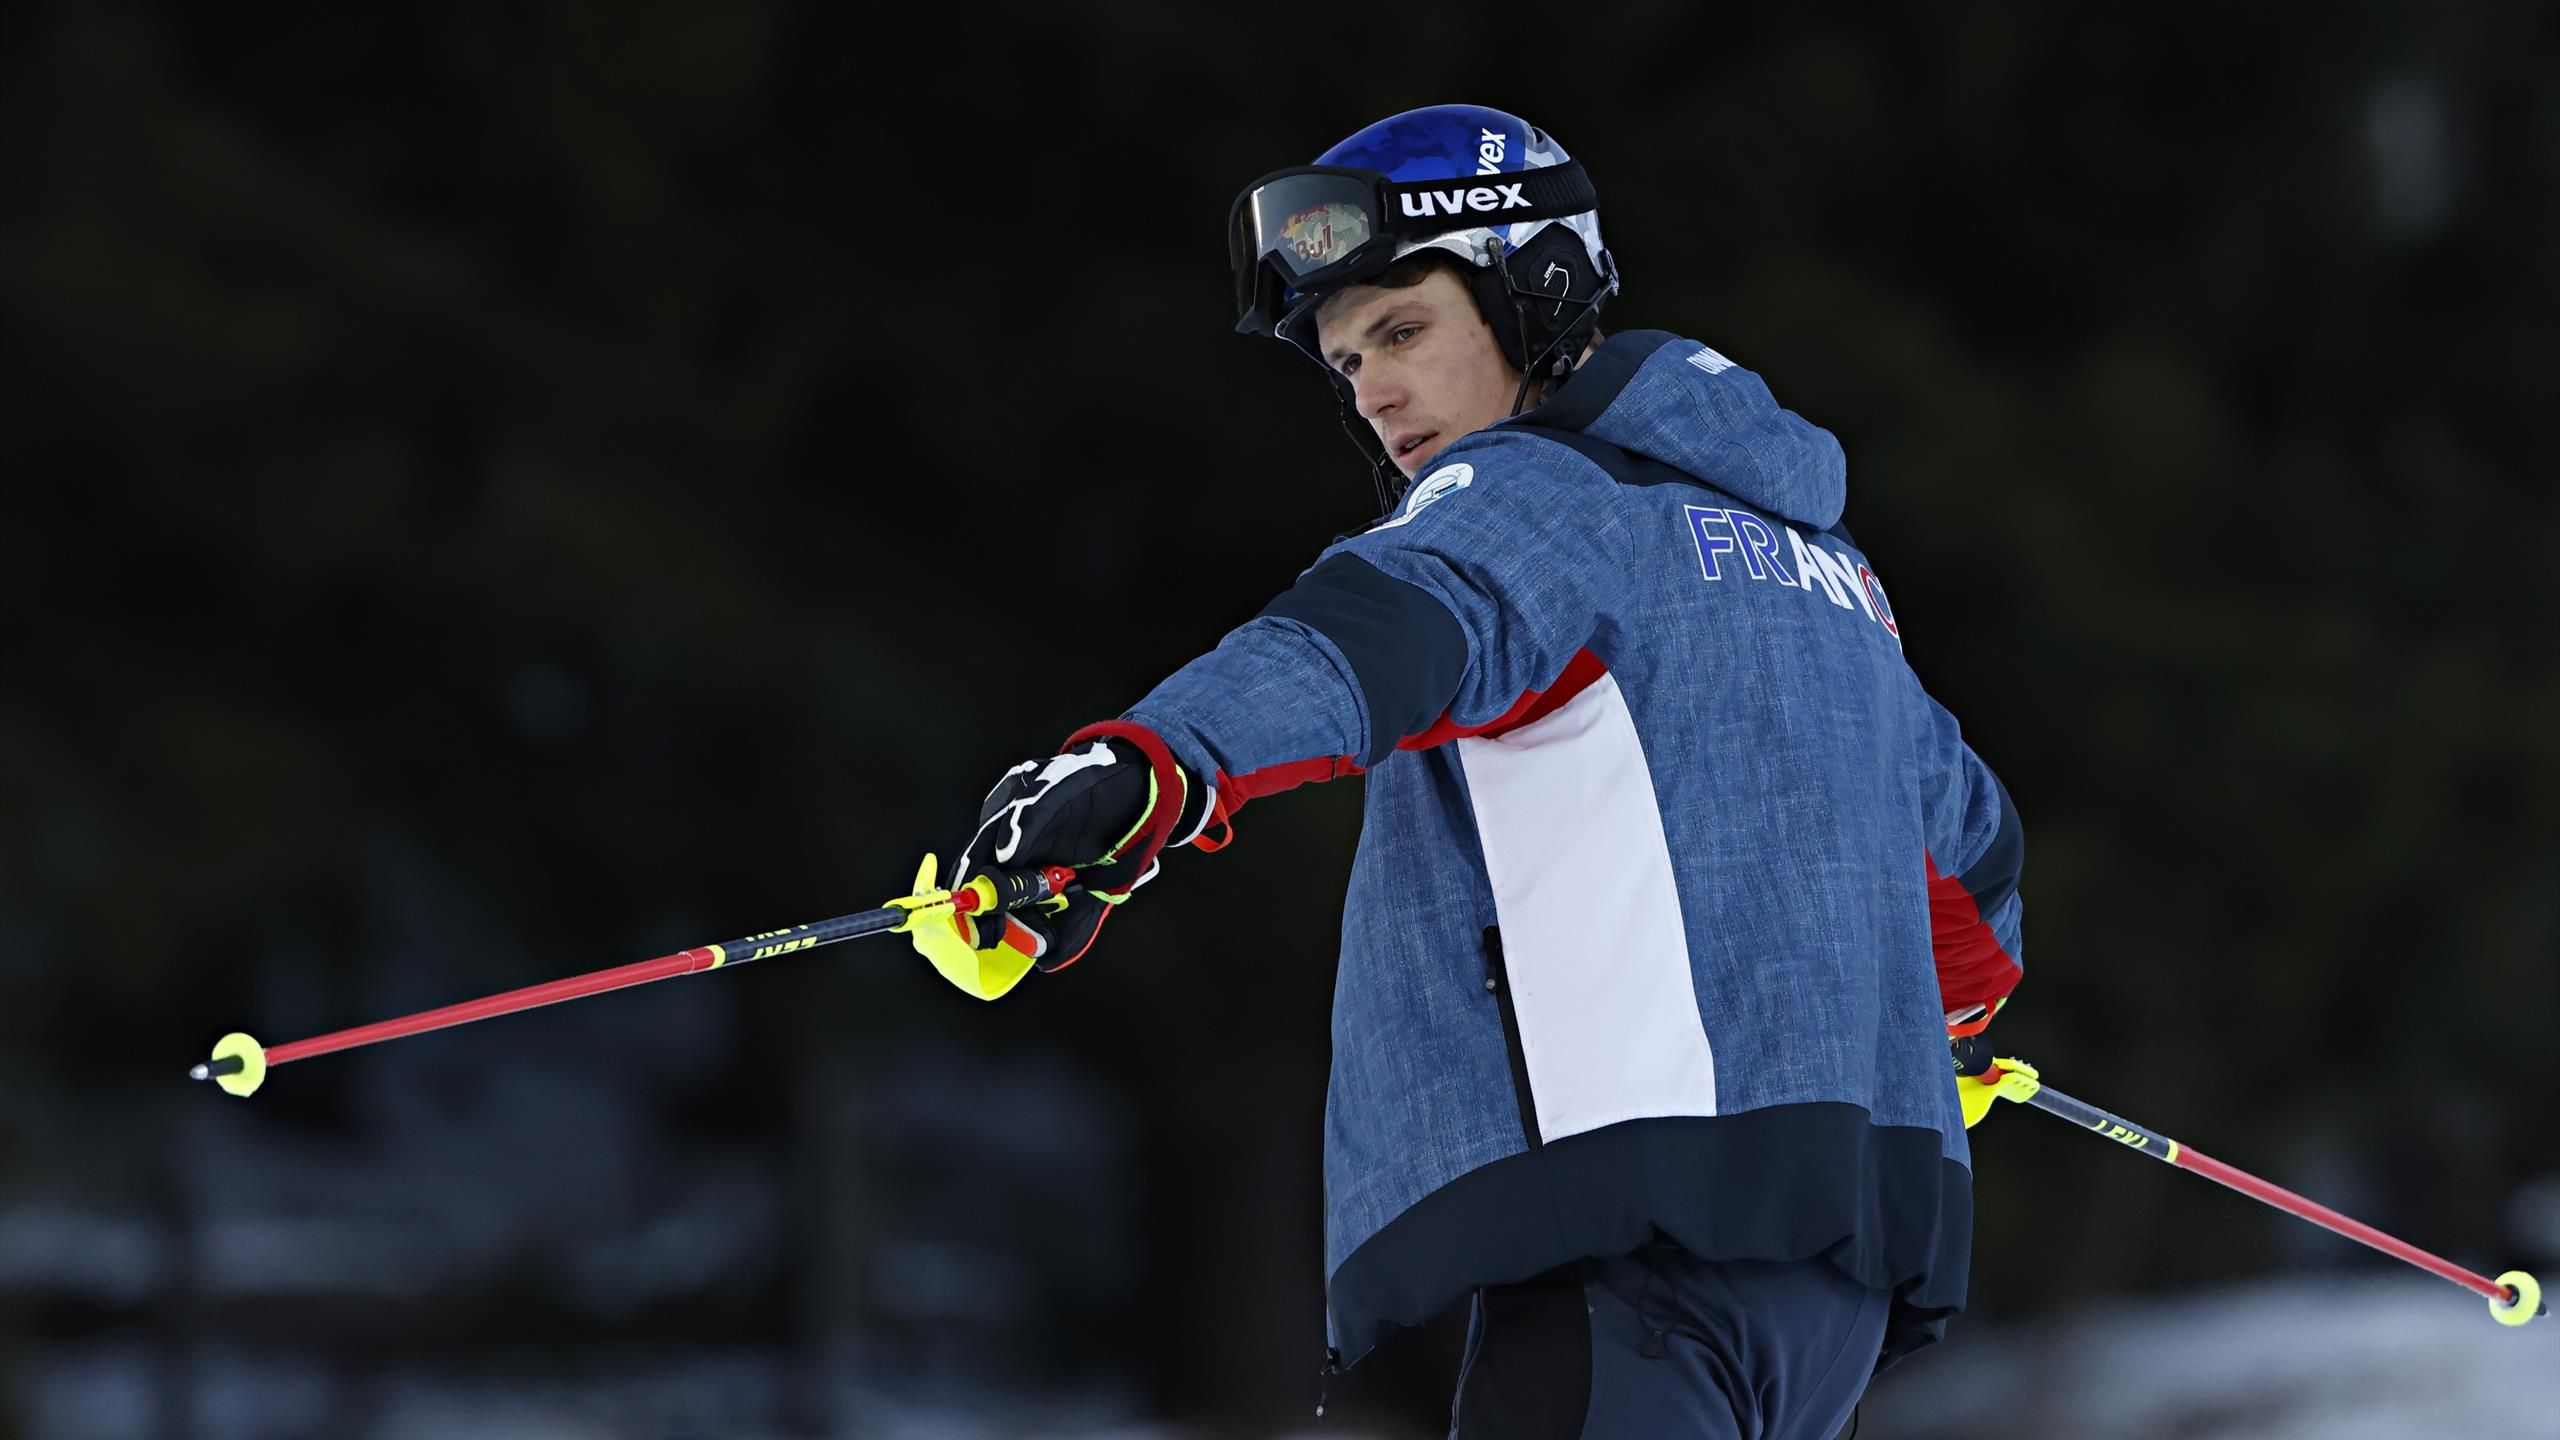 Combiné hommes : 2e manche en replay - Championnats du monde de ski Alpin